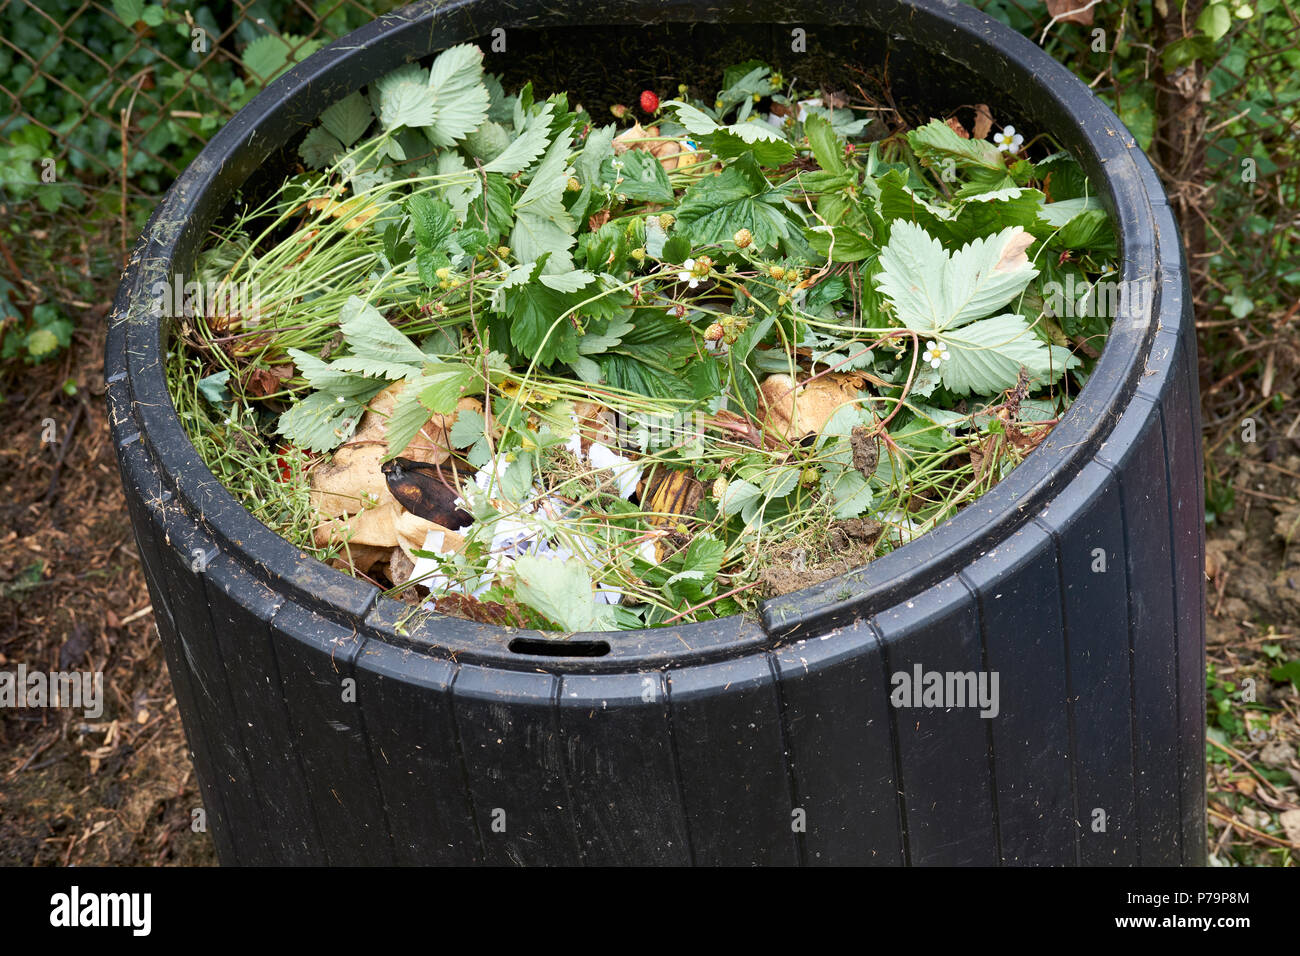 Fresca cucina verde e scarti da giardino in un giardino interno in plastica nera compost bin in una casa giardino vegetale, UK. Foto Stock